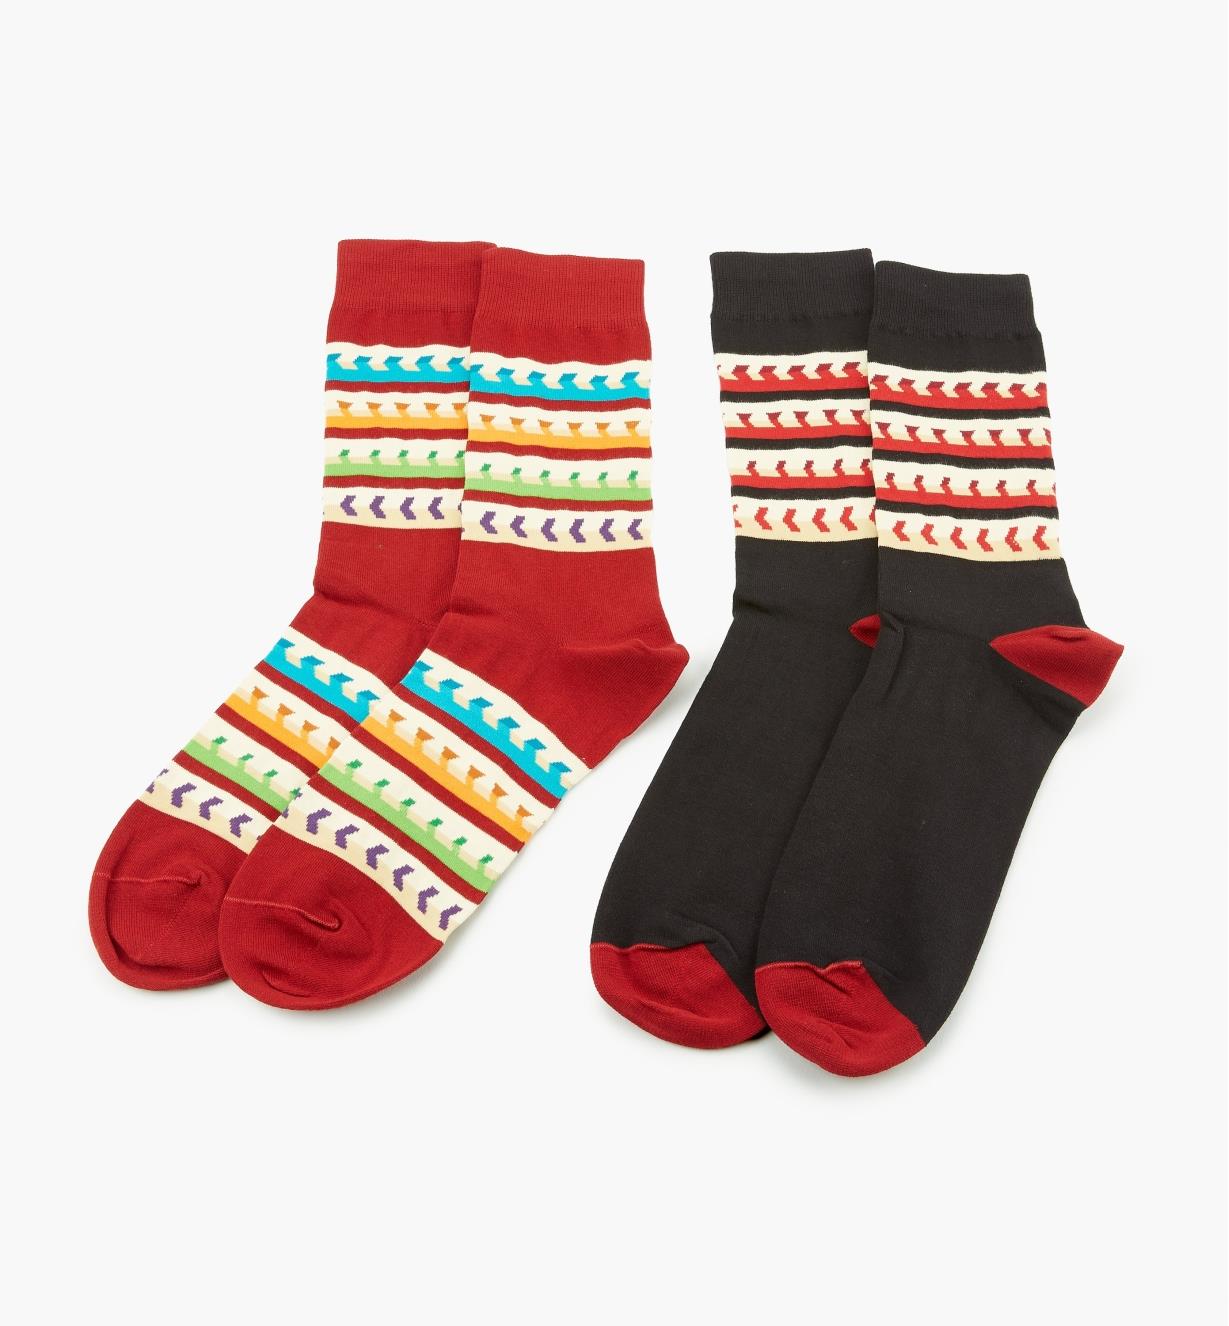 67K3122 - Socks, size 10 12 (2 pr.)